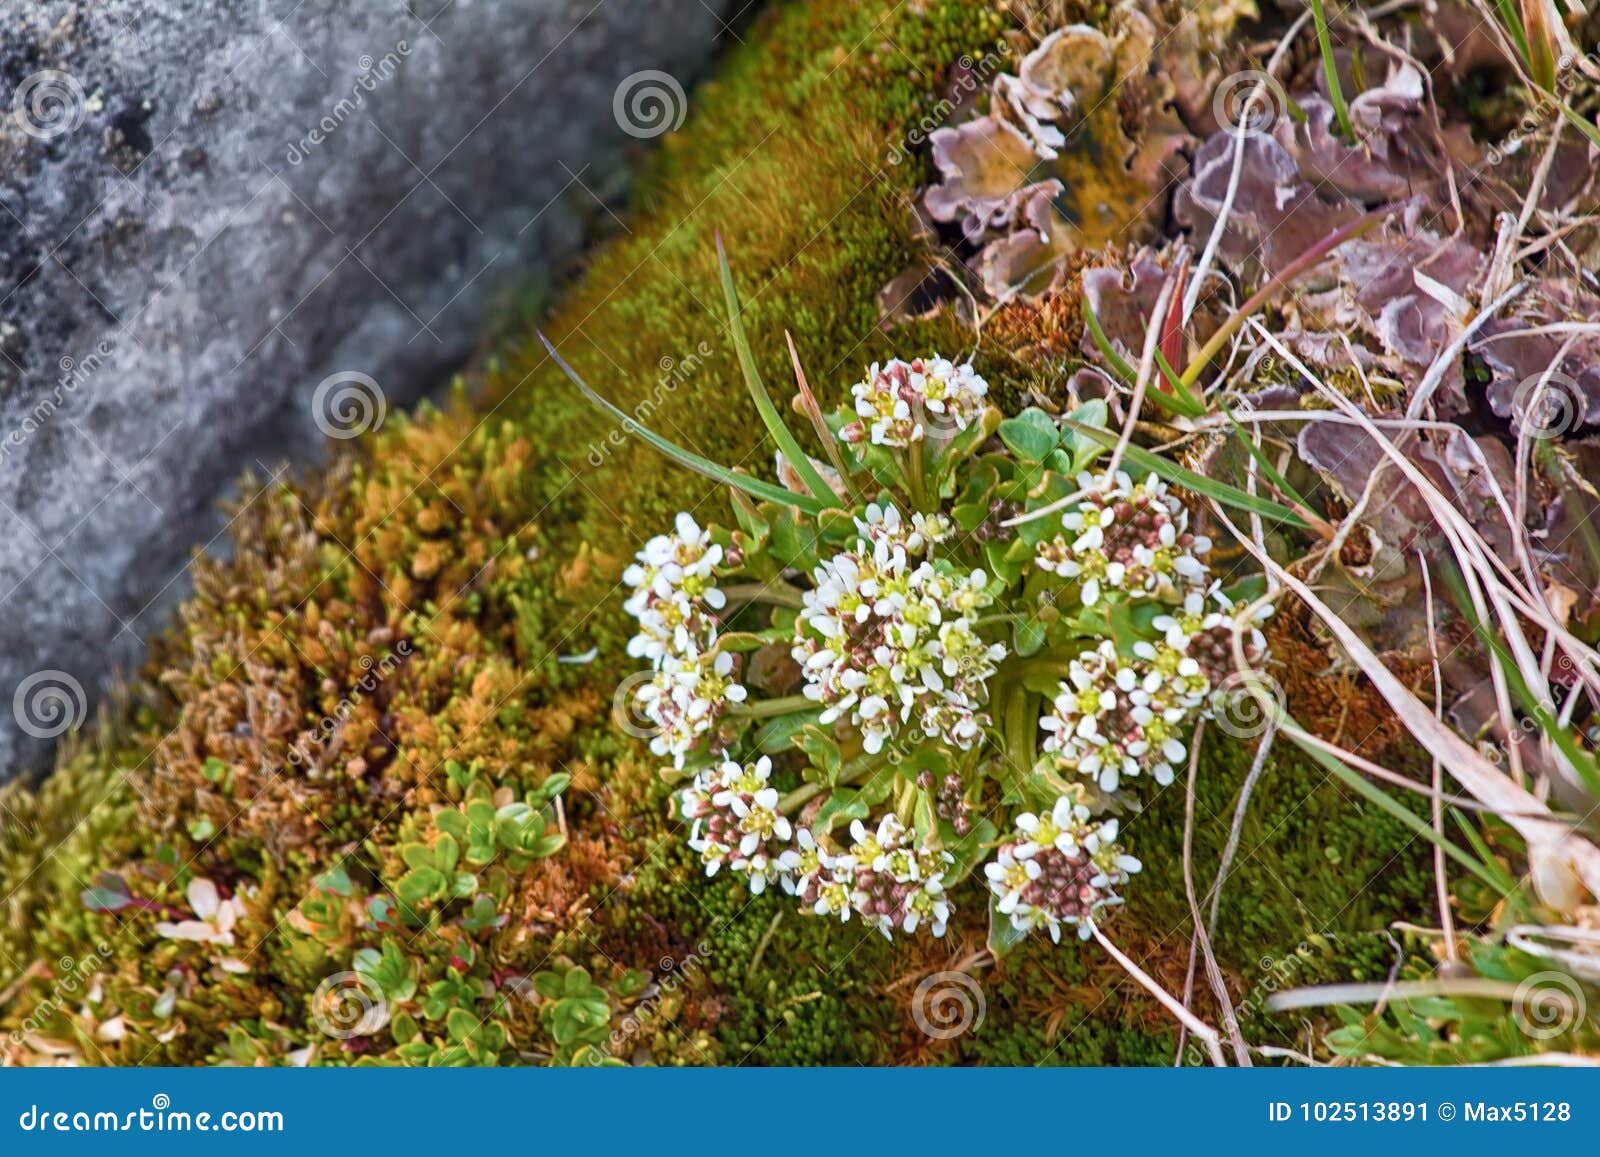 scurvy grass cochlearia groenlandica